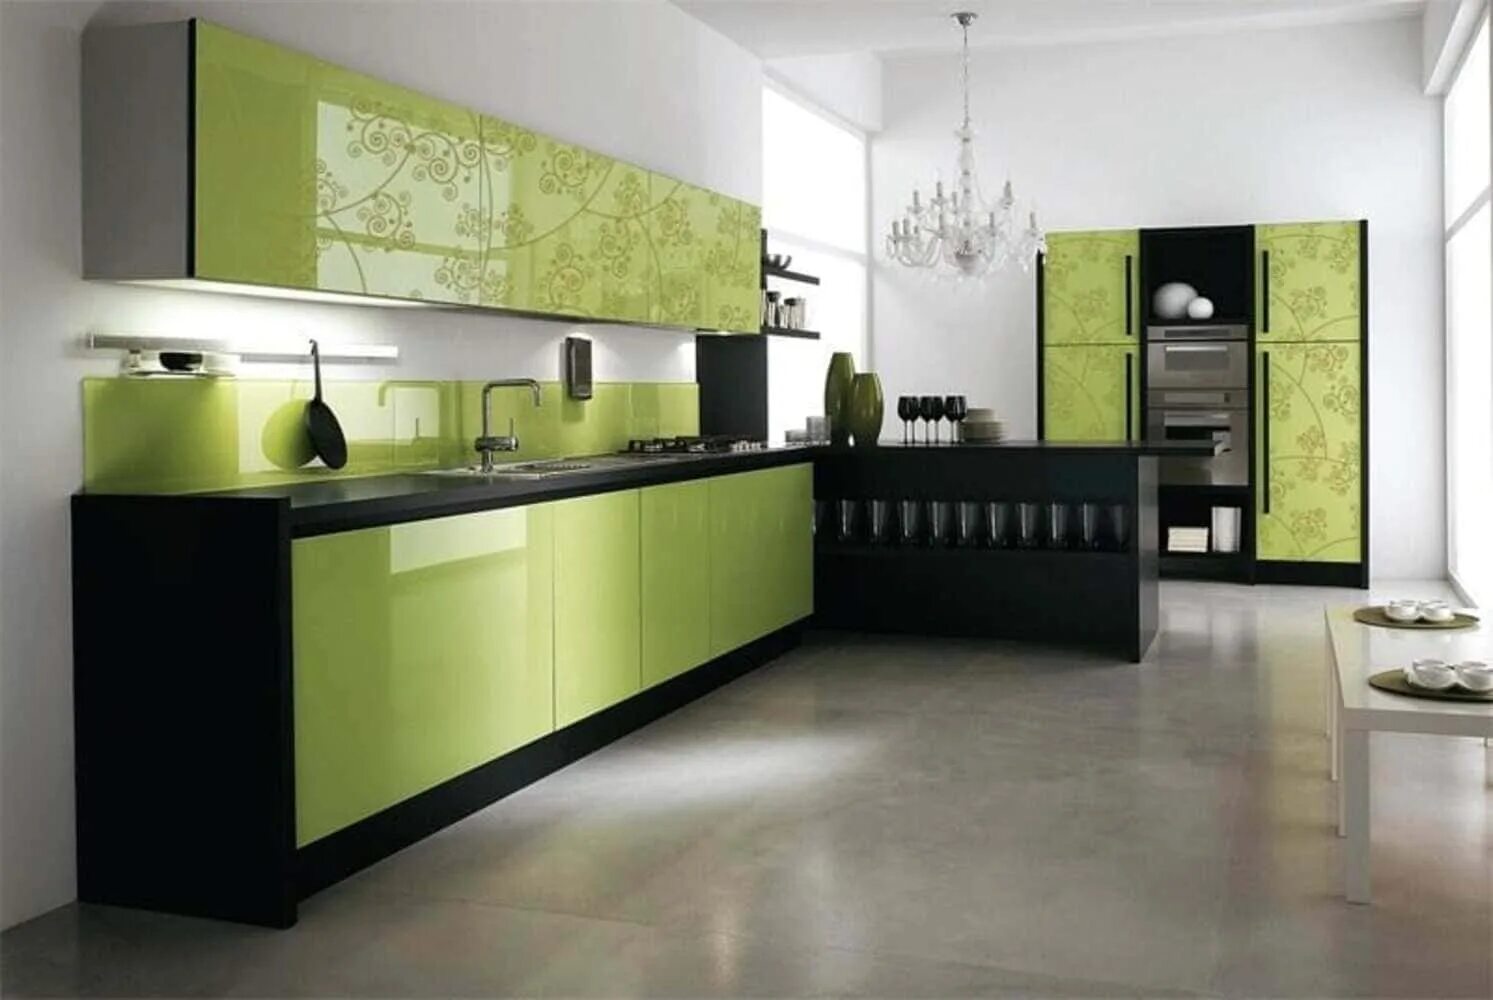 Кухня зеленого цвета. Кухня в зеленых оттенках. Кухня оливкового цвета. Кухонный гарнитур в зеленых тонах. Глянцевый зеленый цвет